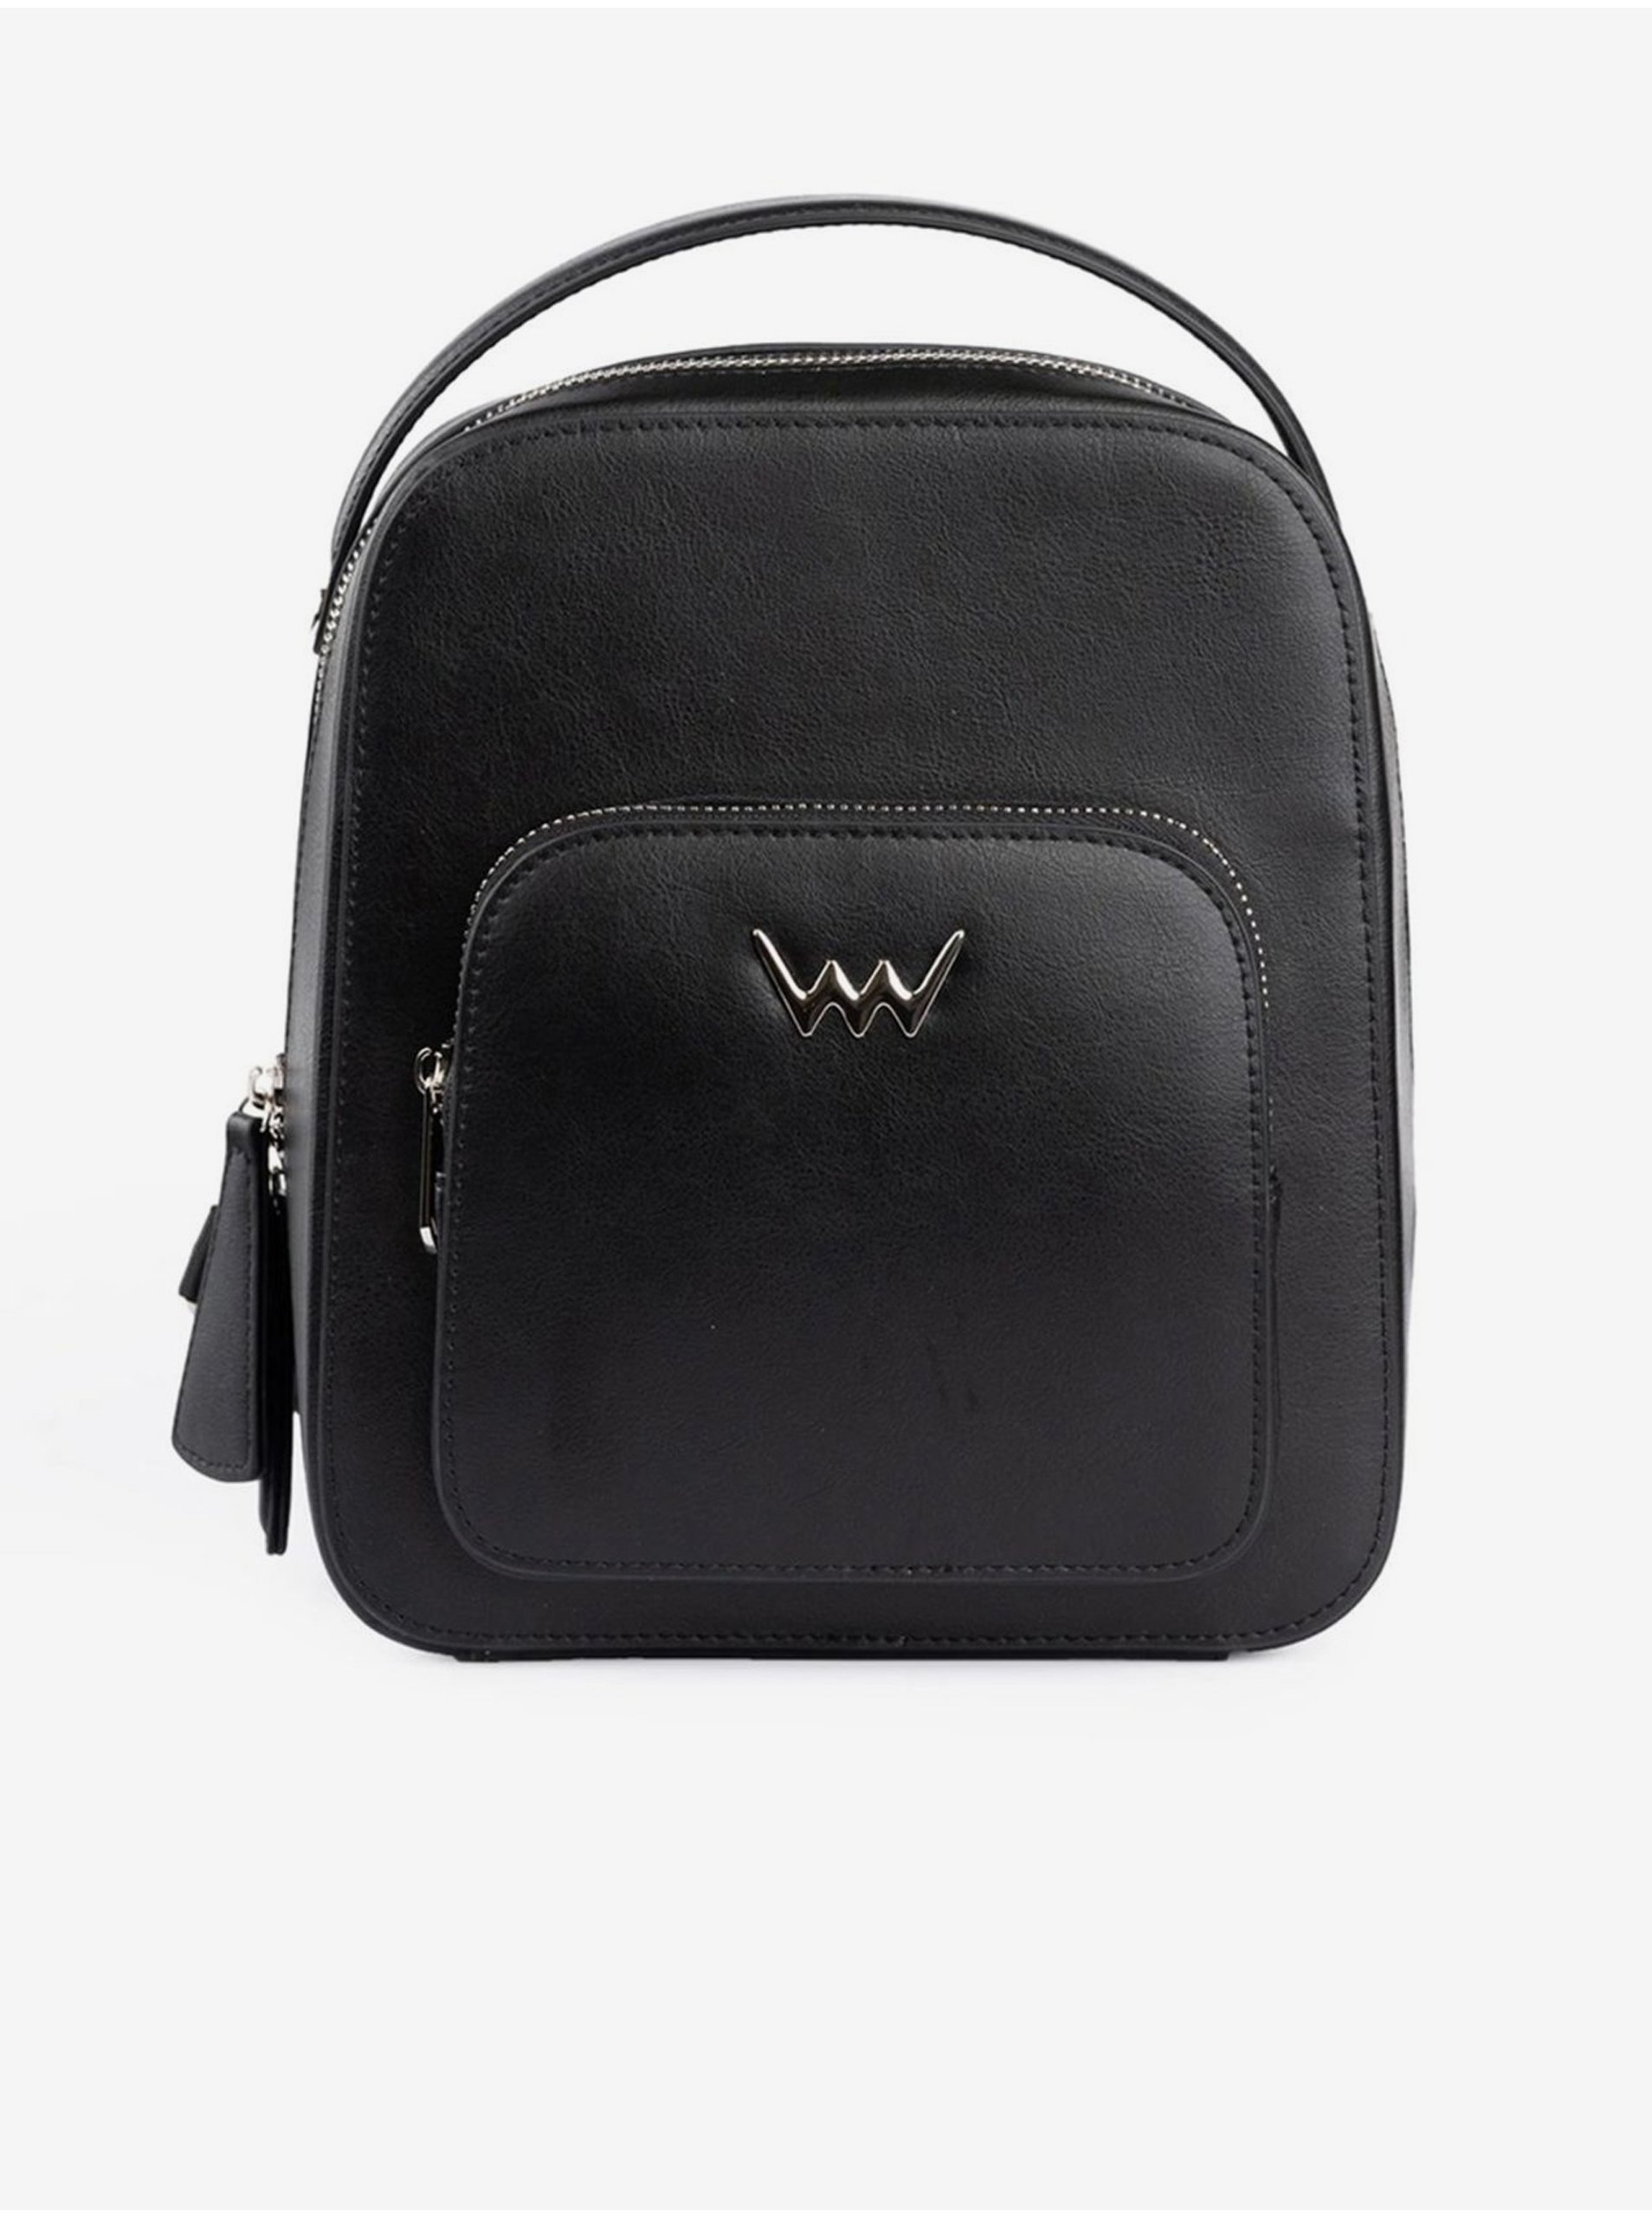 E-shop Černý dámský kožený batoh Vuch Darty